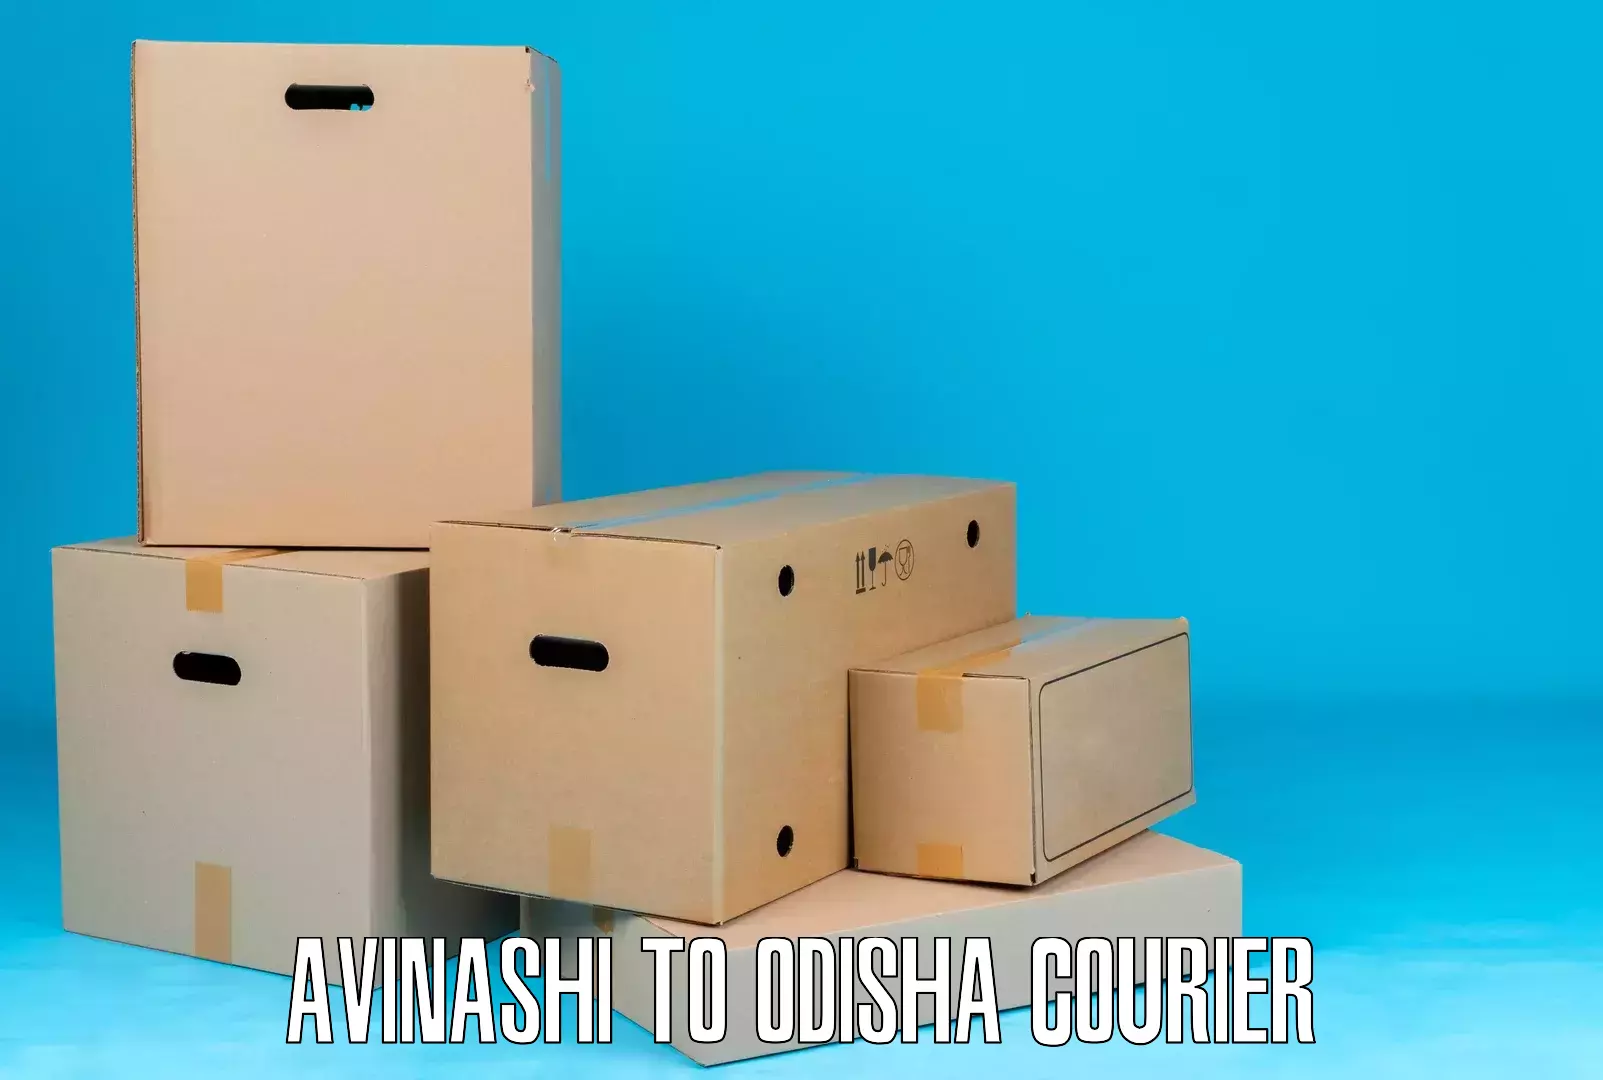 Customized shipping options Avinashi to Jaipatna